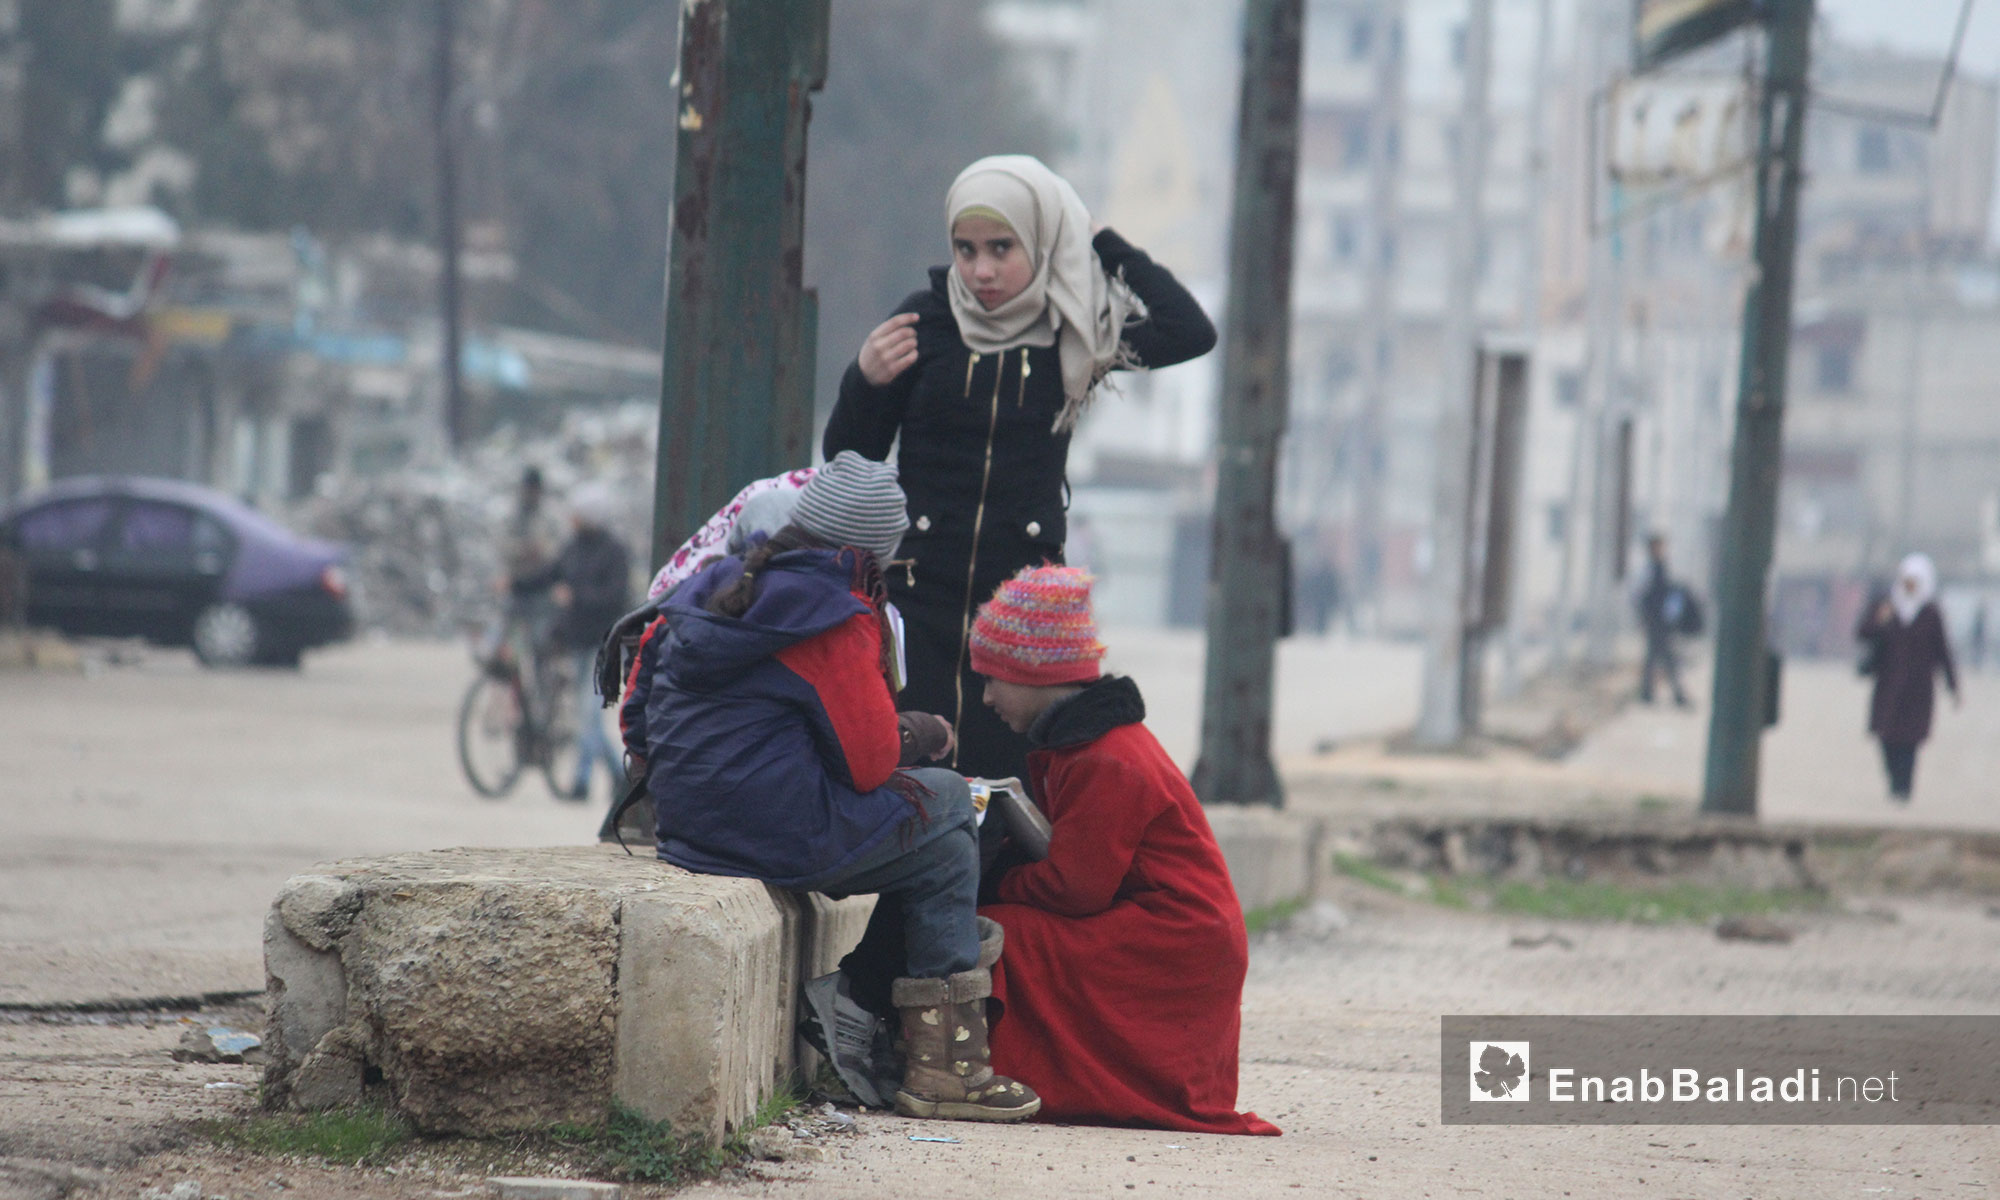 أطفال يتبادلون الحديث في حي الوعر بمدينة حمص - 21 كانون الثاني 2017 (عنب بلدي)